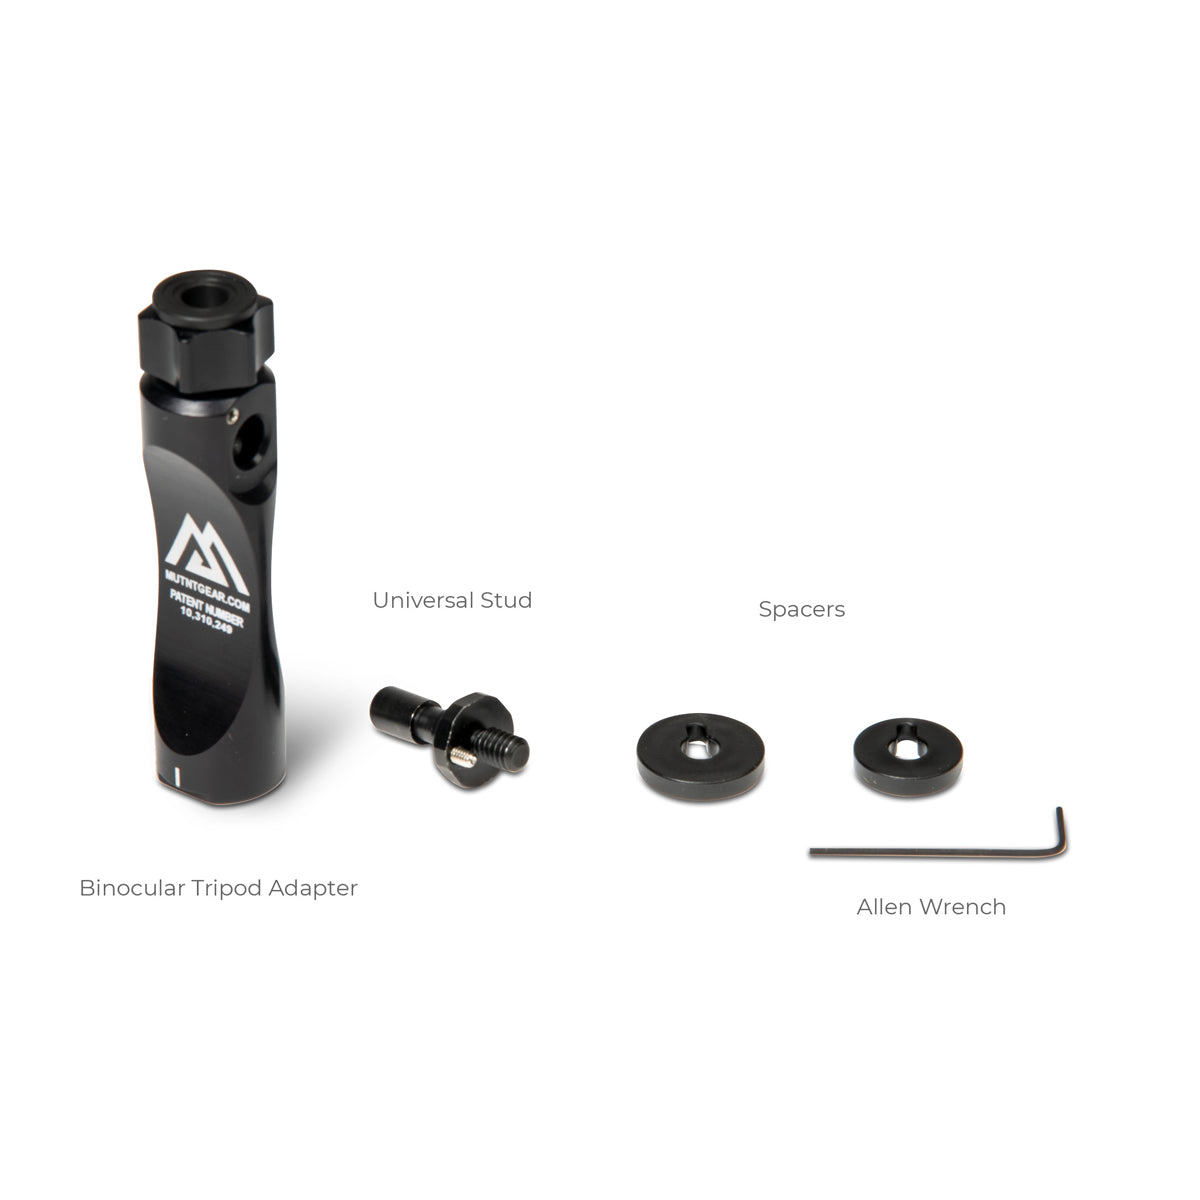 MUTNT Gear Gen 2 Binocular Tripod Adapter Kit